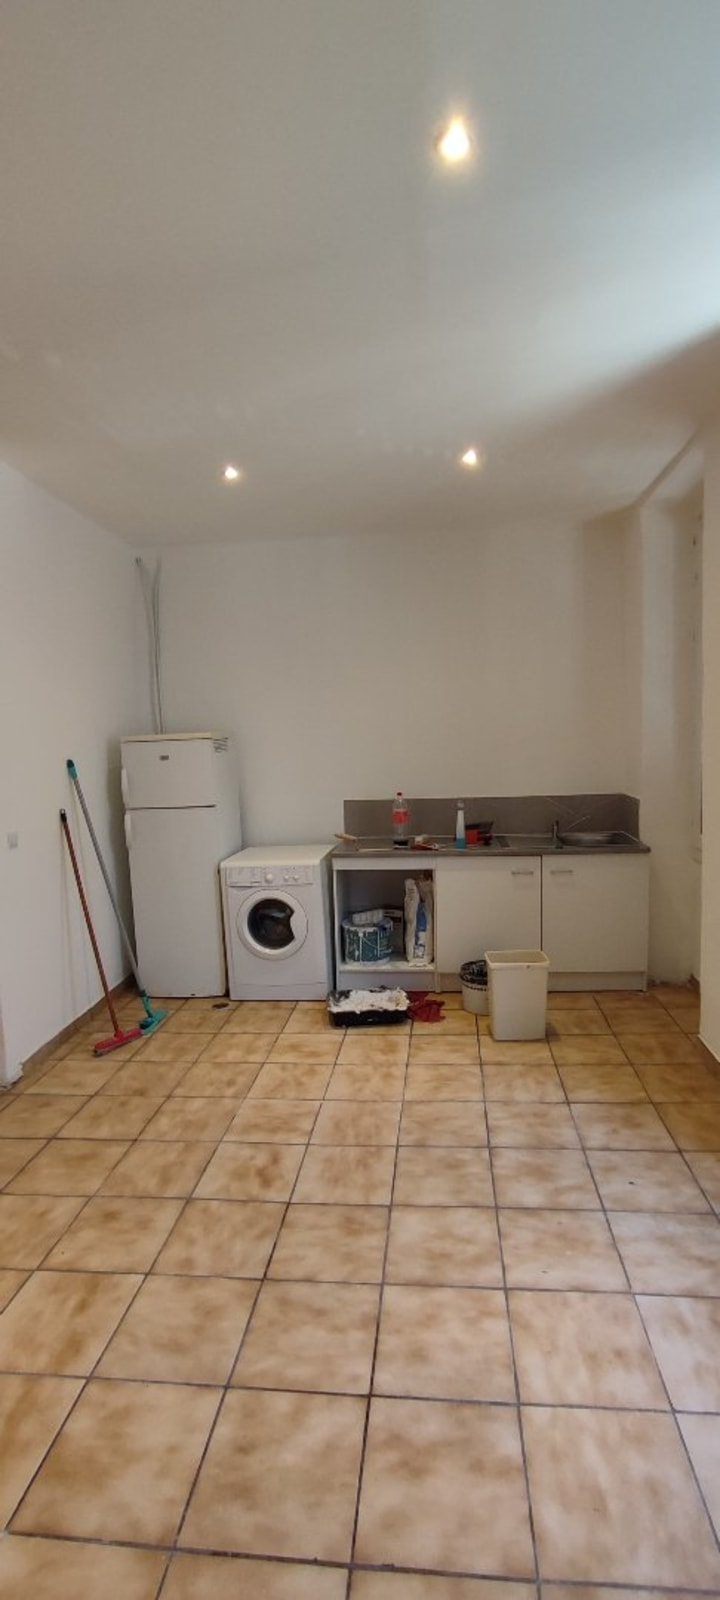 Vente Appartement - 1 pièce(s) - 33.41m2 - Marseille 3eme Arrondissement (13003)